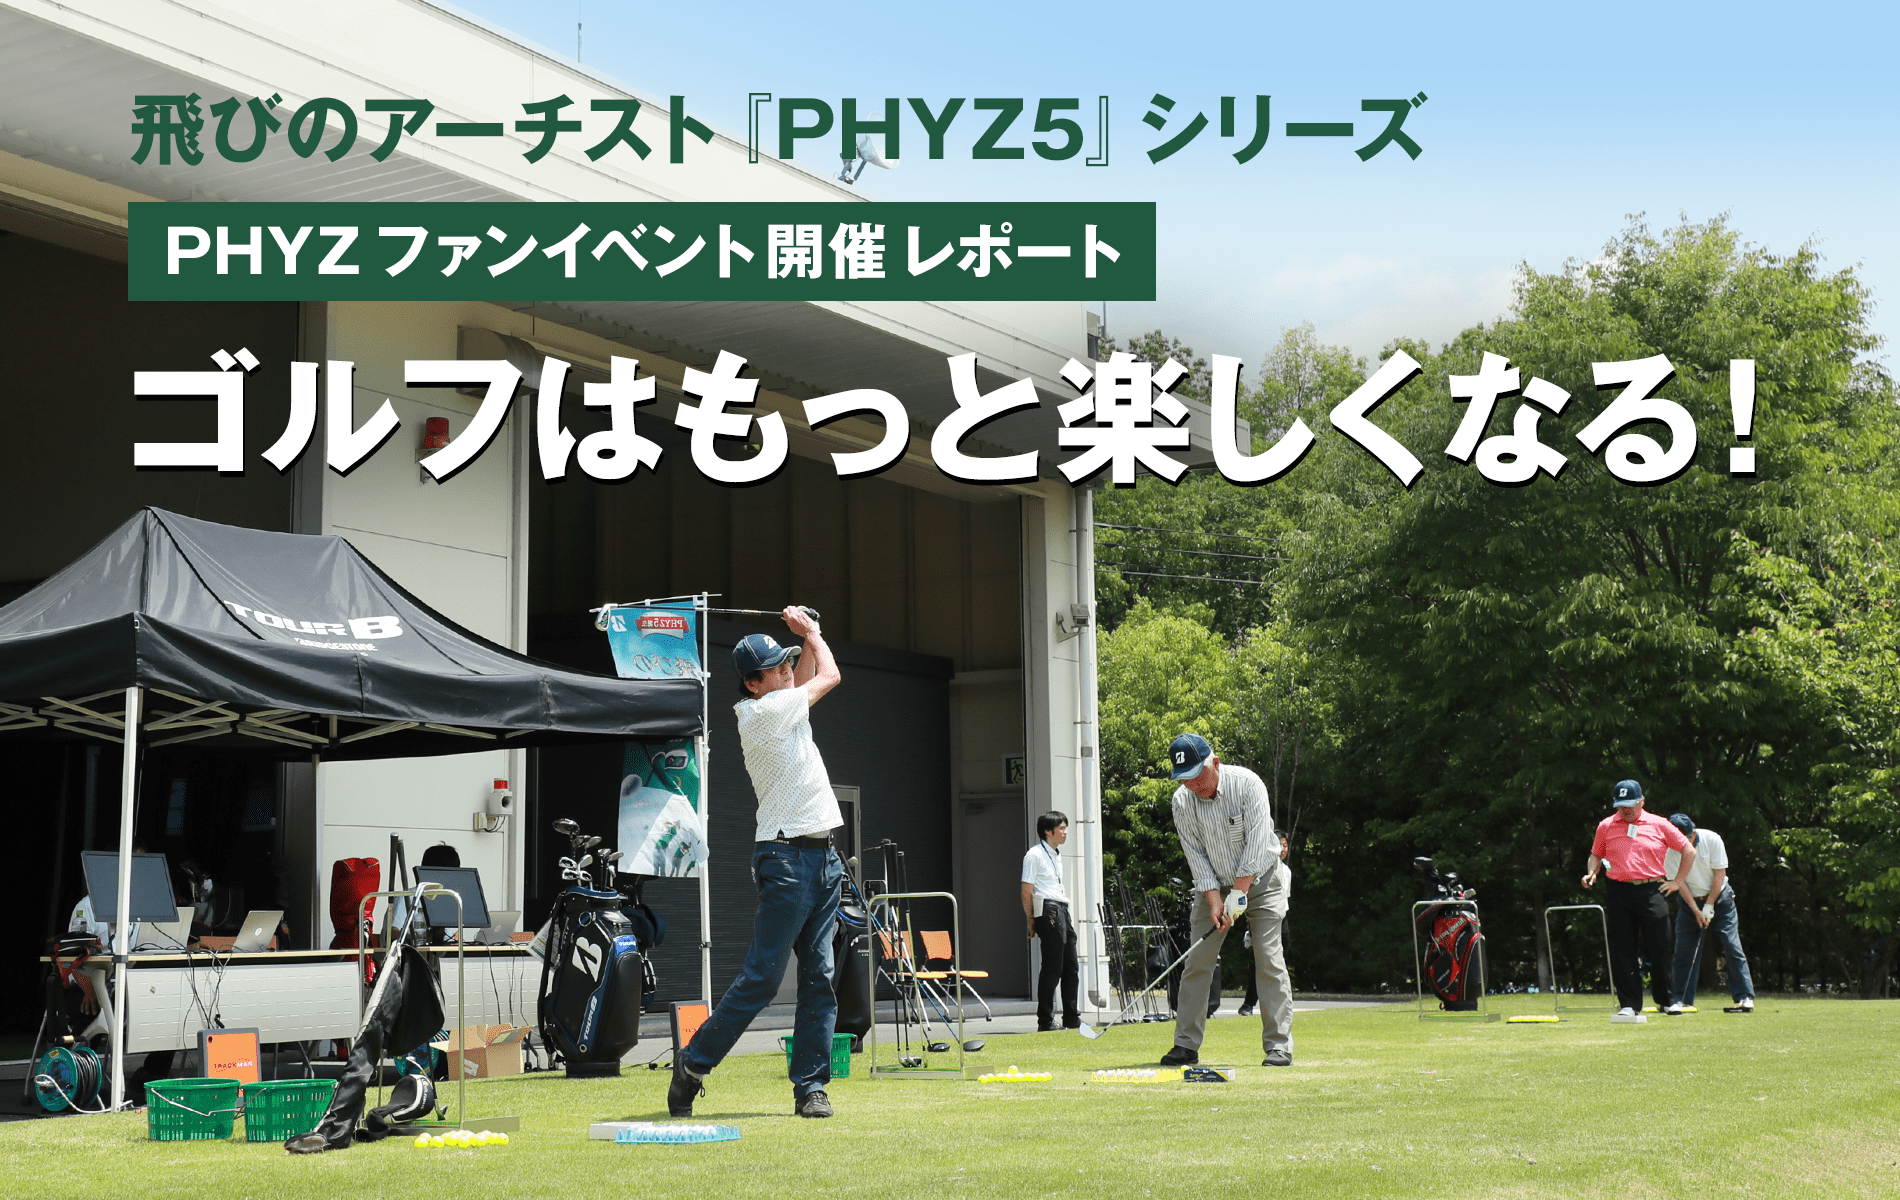 “〜飛びのアーチスト『PHYZ5』シリーズ〜 PHYZファンイベント開催レポート「ゴルフはもっと楽しくなる！」